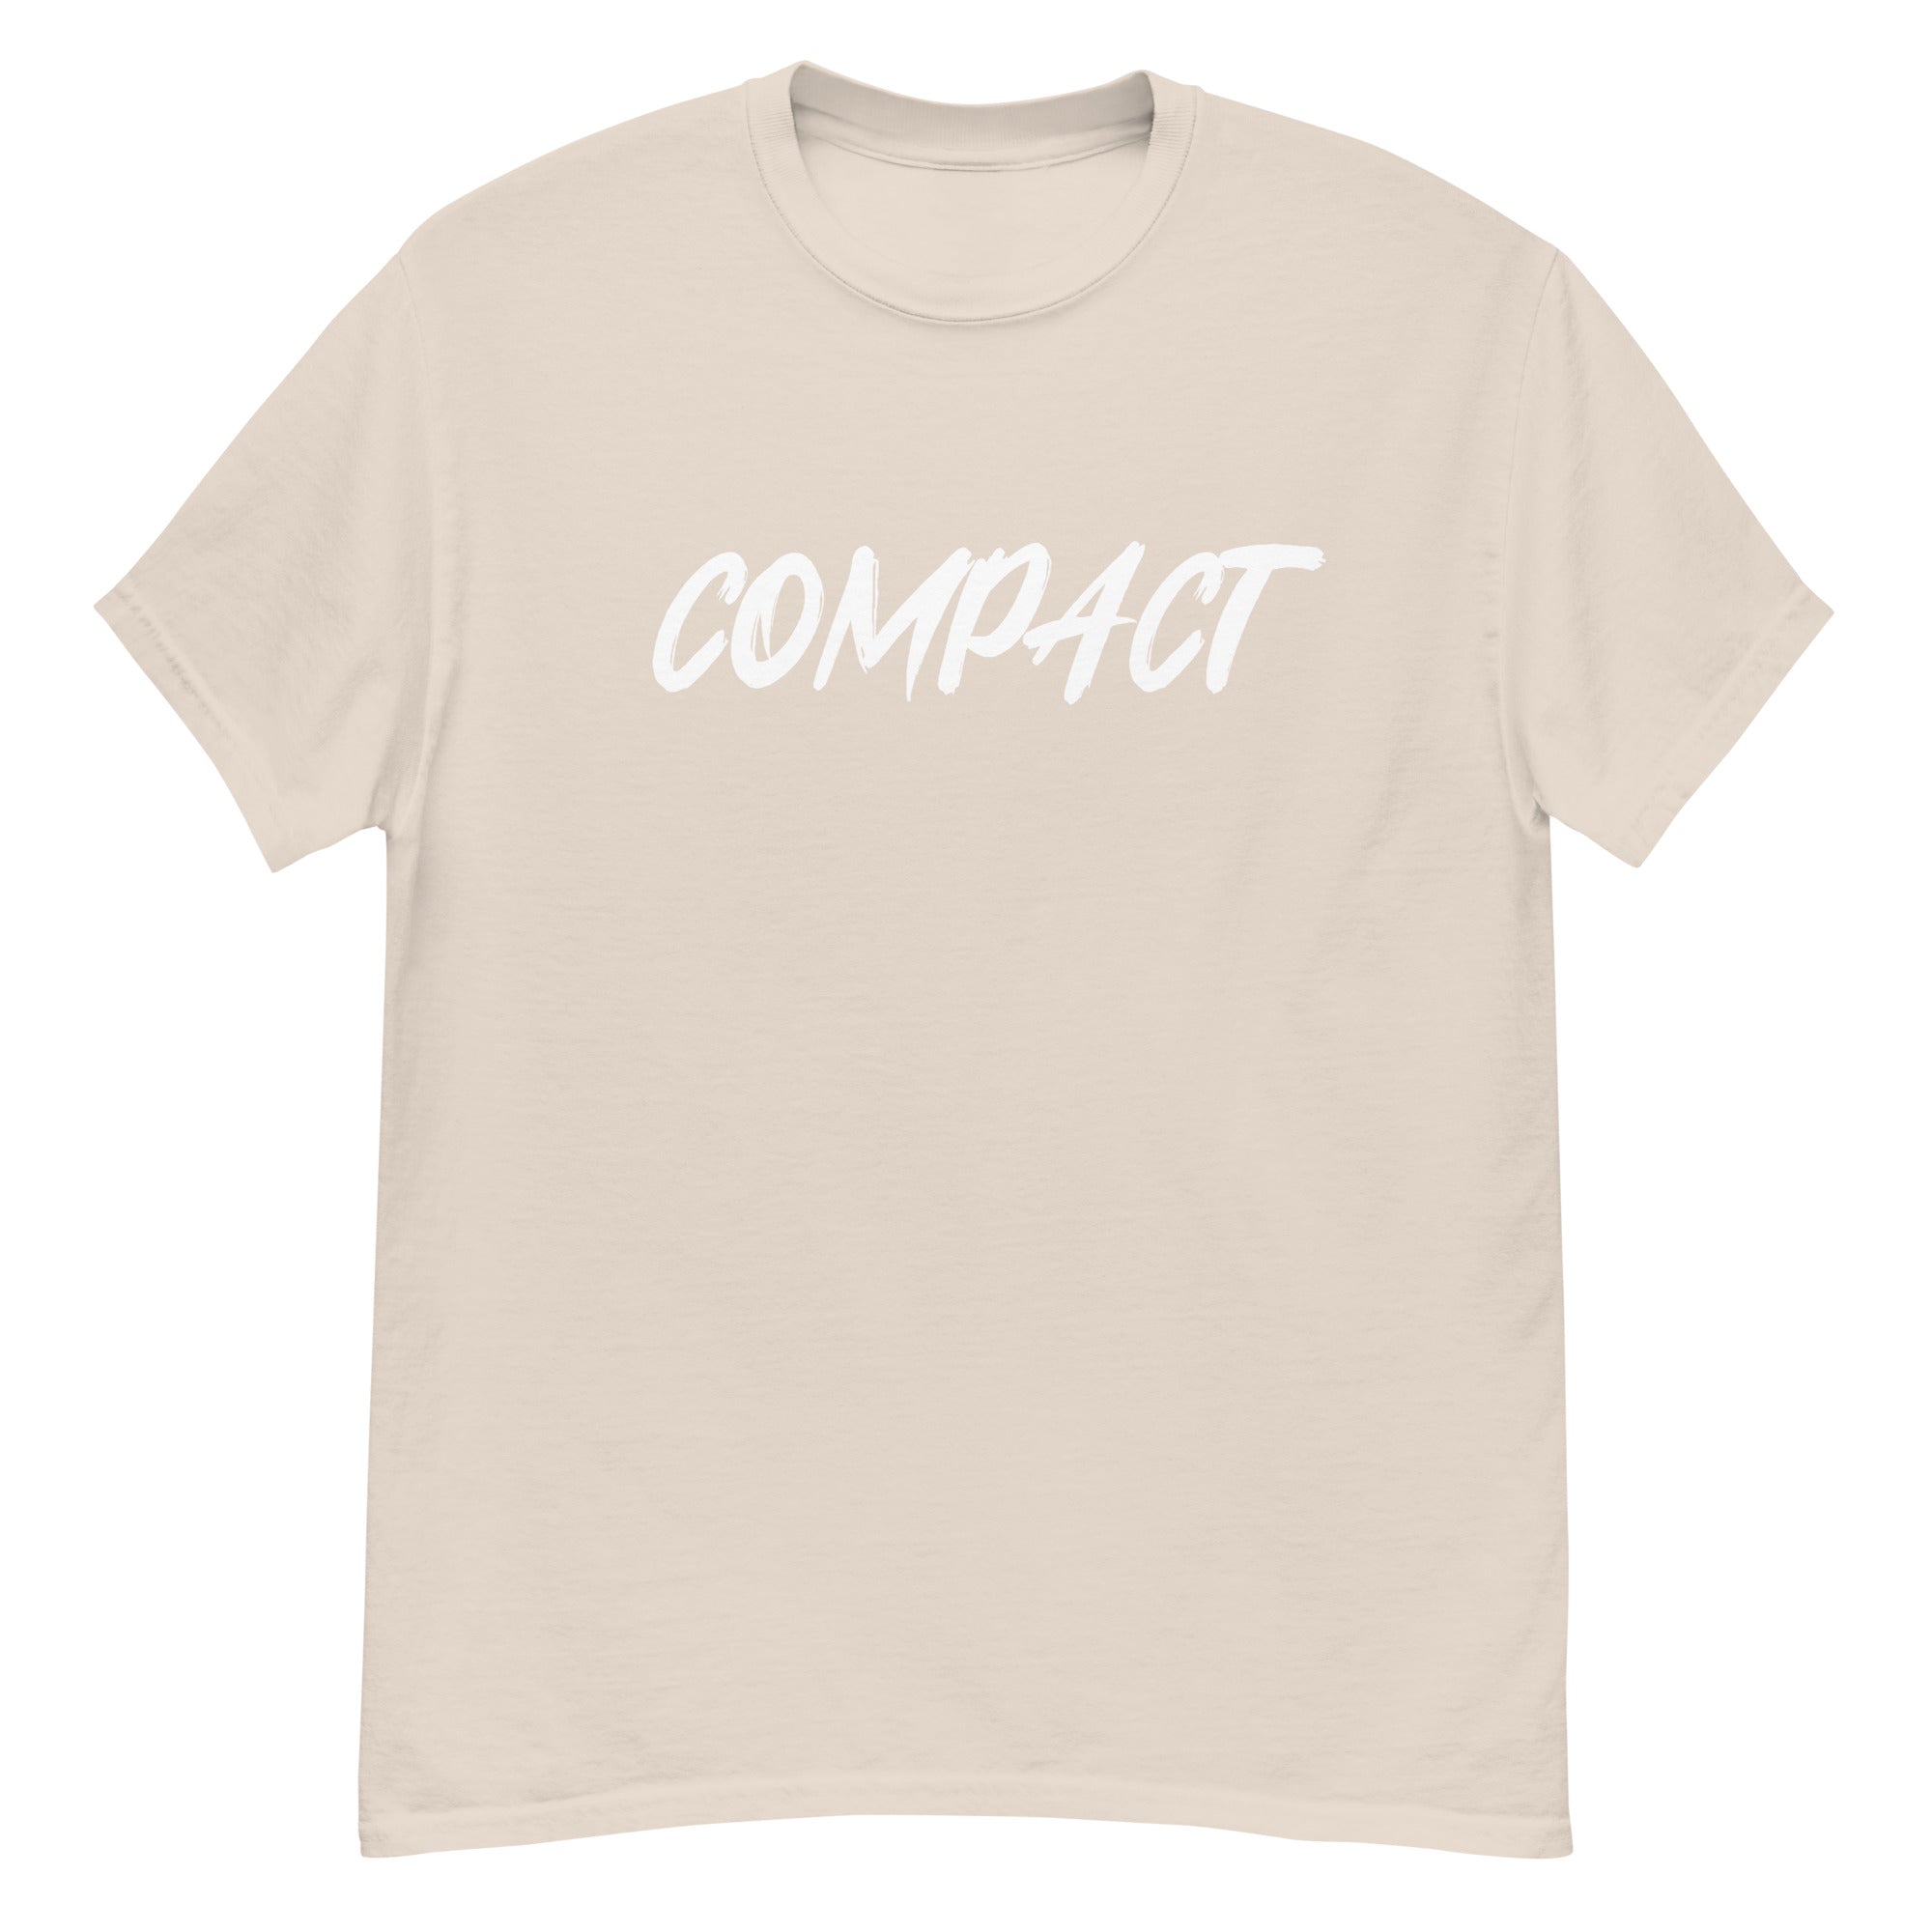 Compact Big Print Shirt